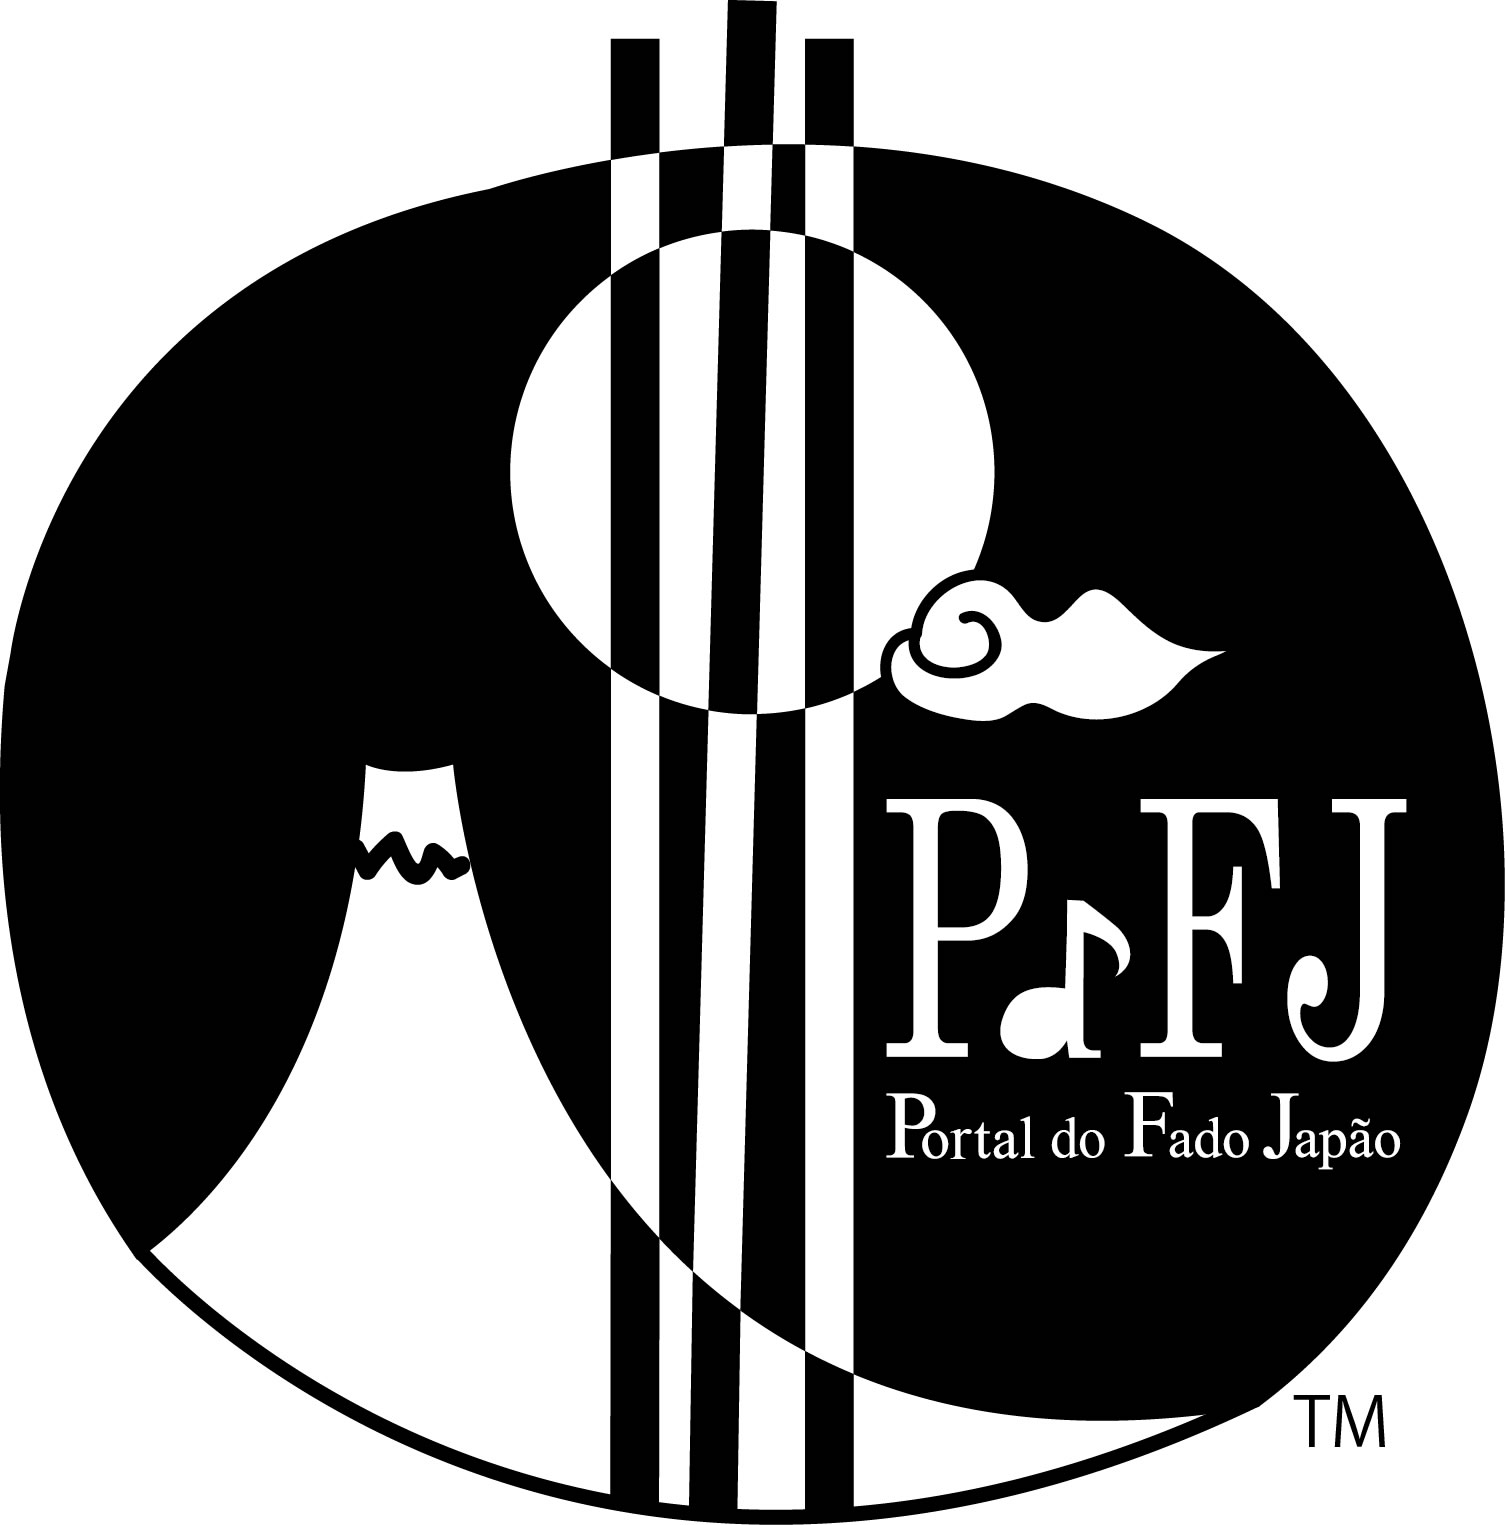 Trademark of Portal do Fado Japao